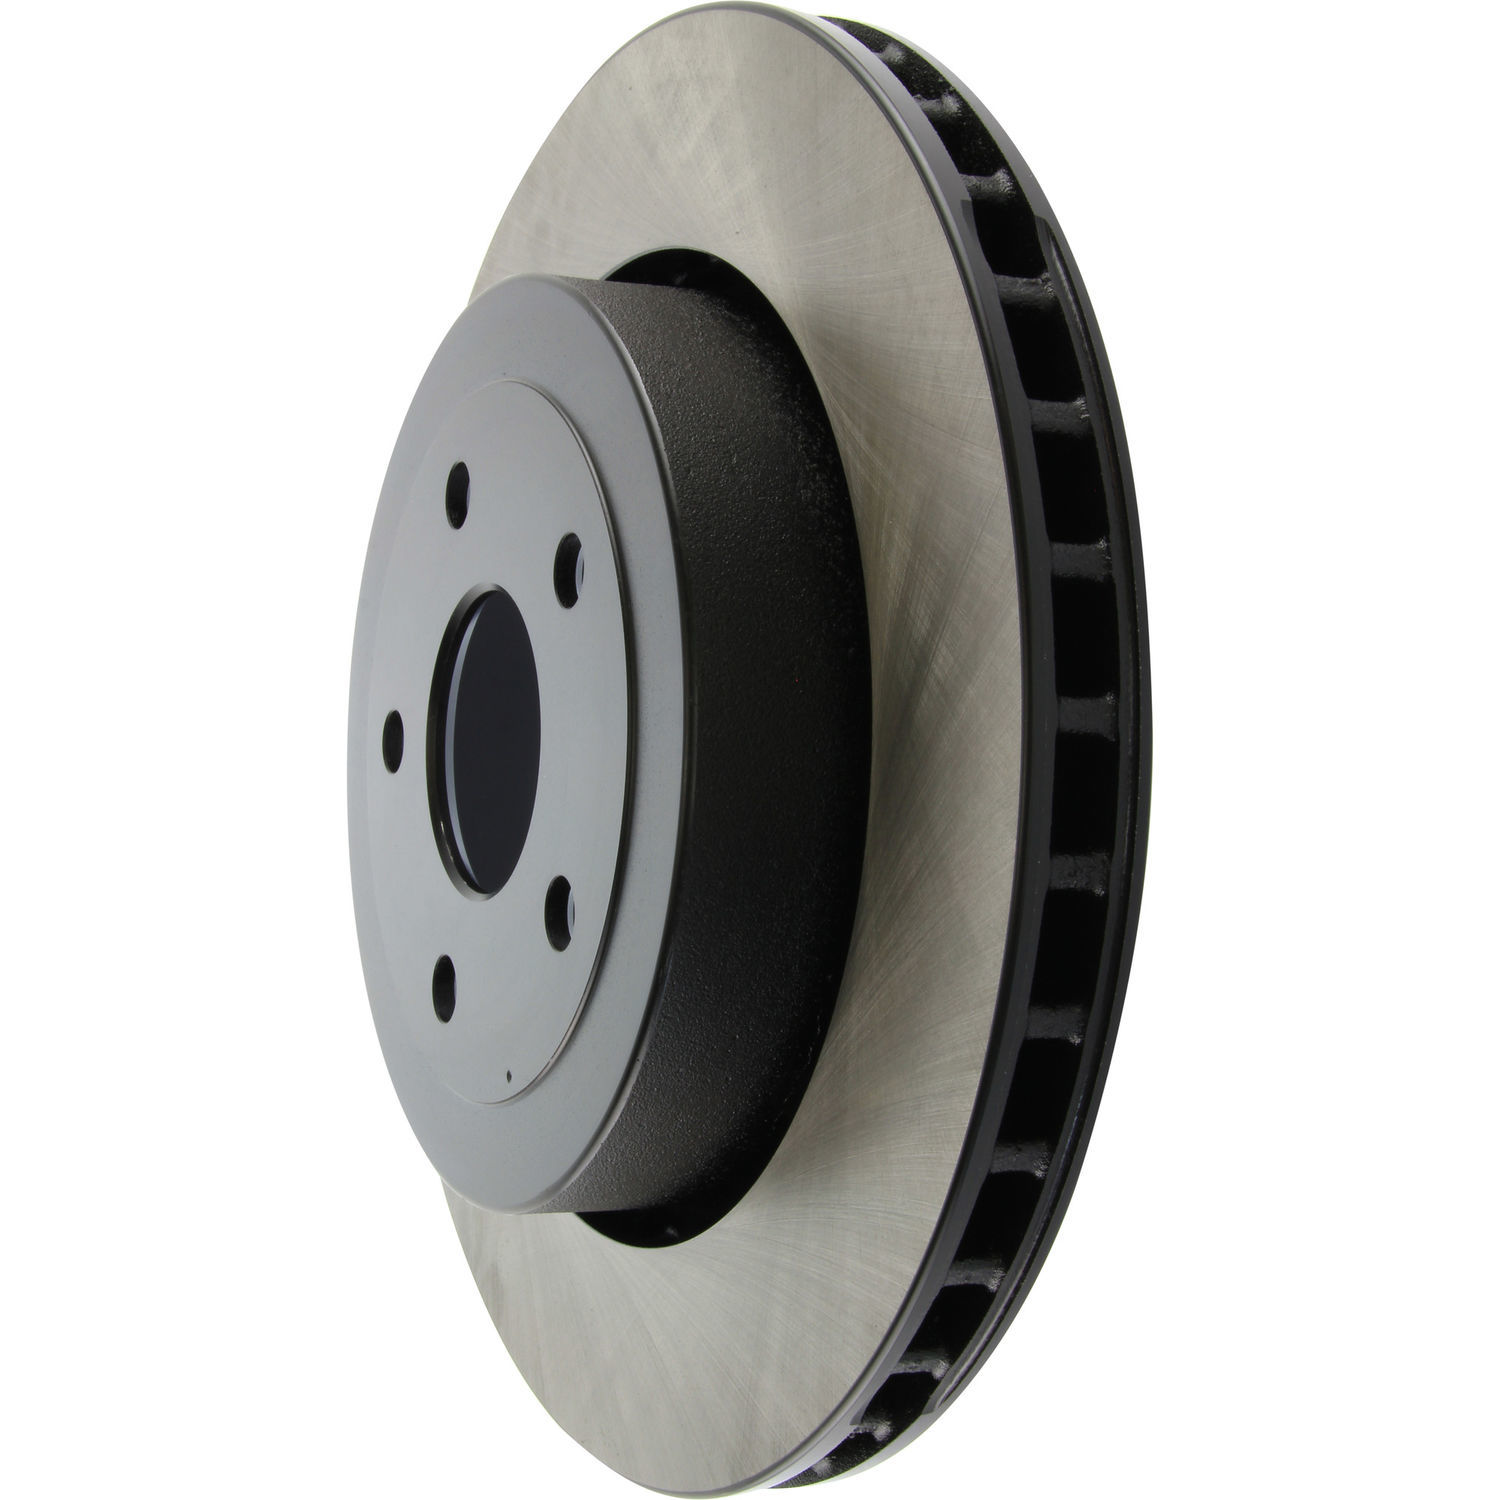 CENTRIC PARTS - Centric Premium High Carbon Alloy Disc Brake Rotors (Rear) - CEC 125.58004